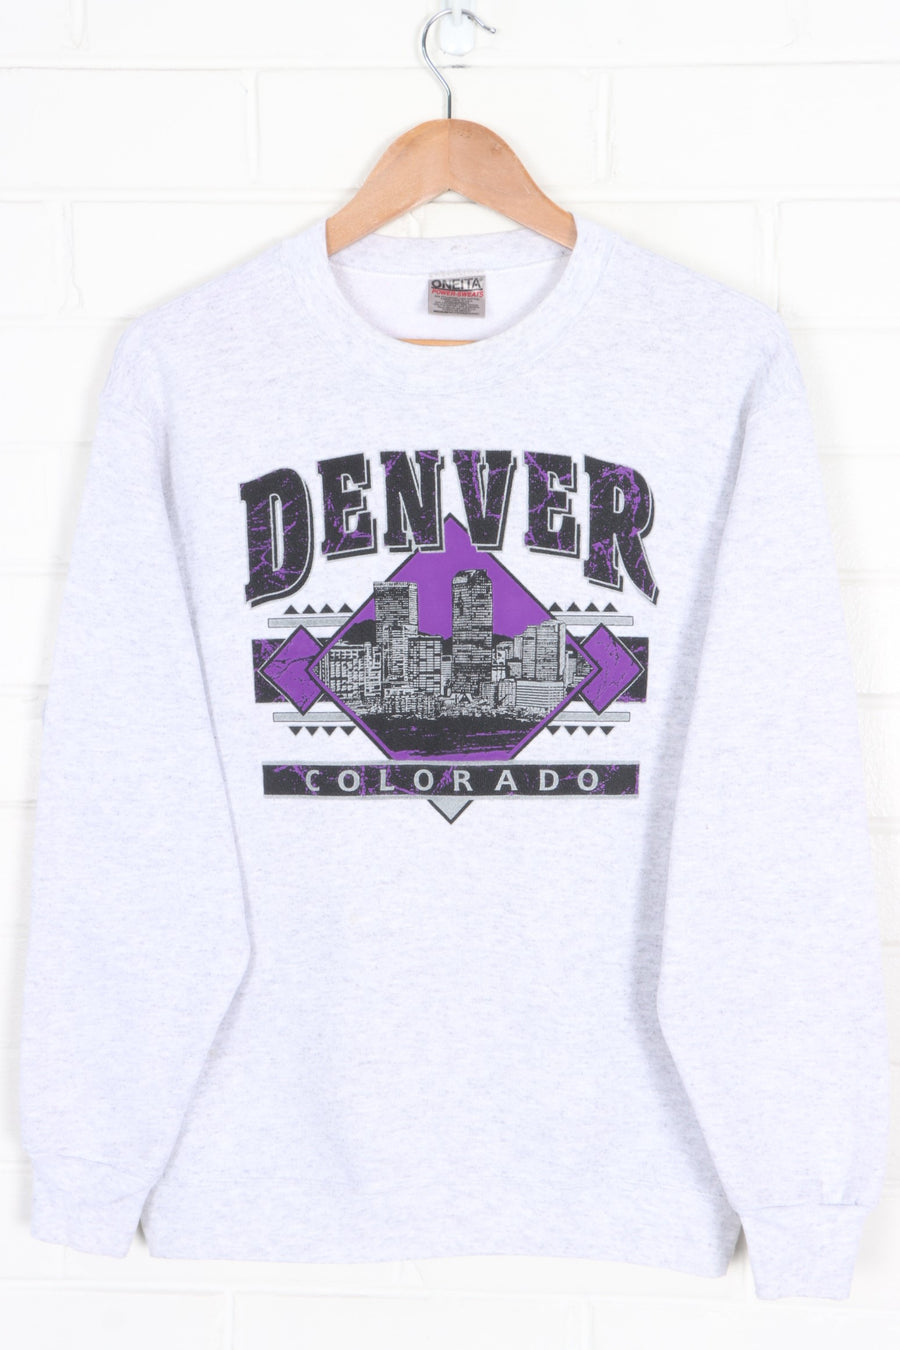 Denver Colorado Retro Crewneck Sweatshirt (S-M)